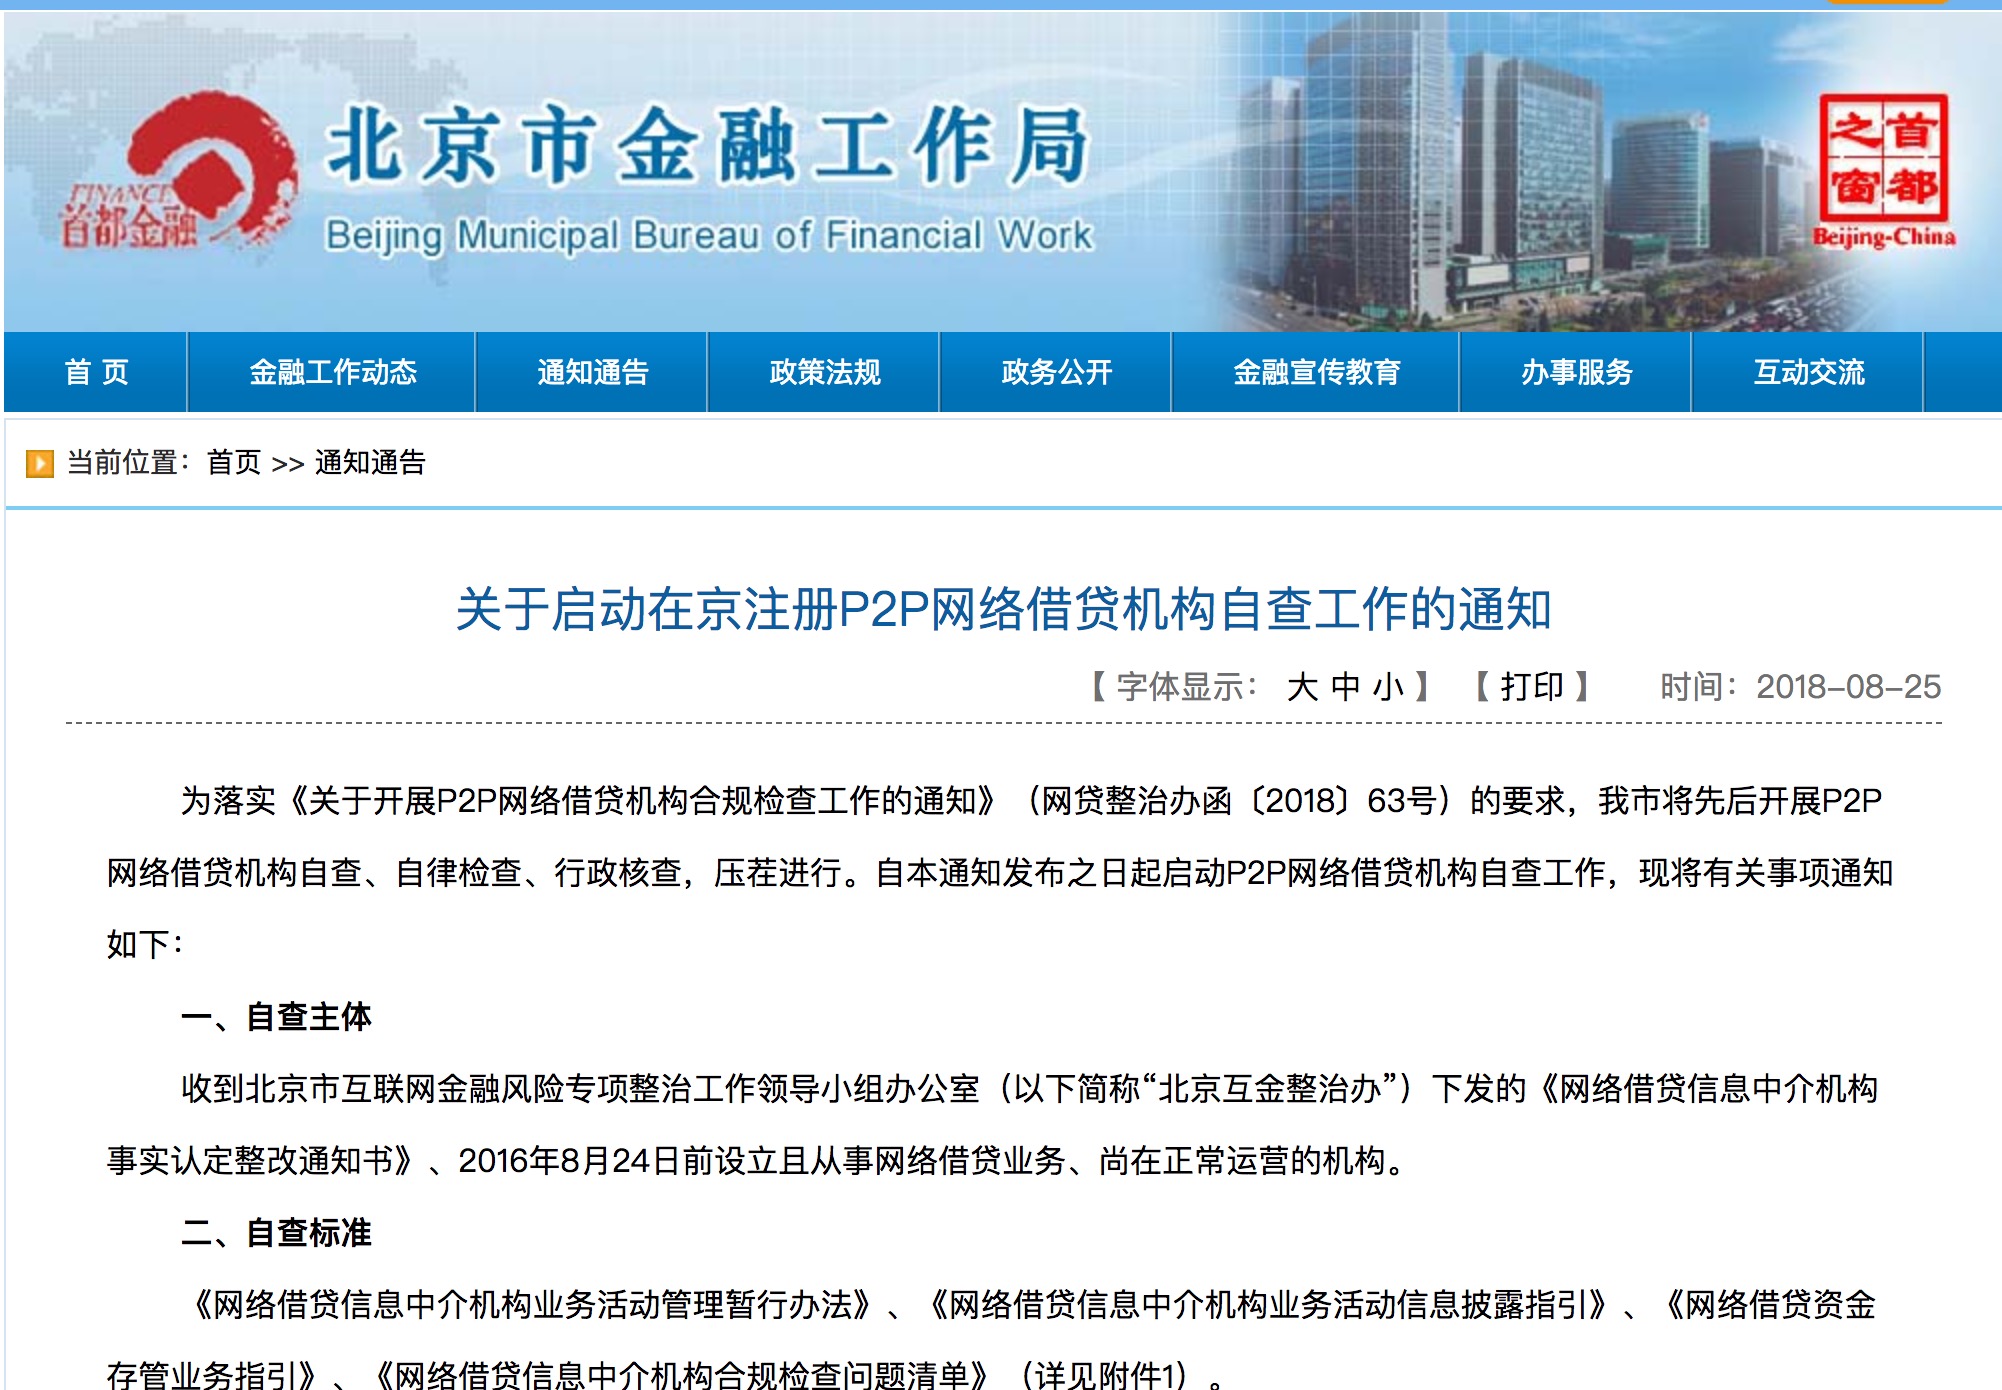 北京金融局启动网贷自查工作 检查报告最迟10